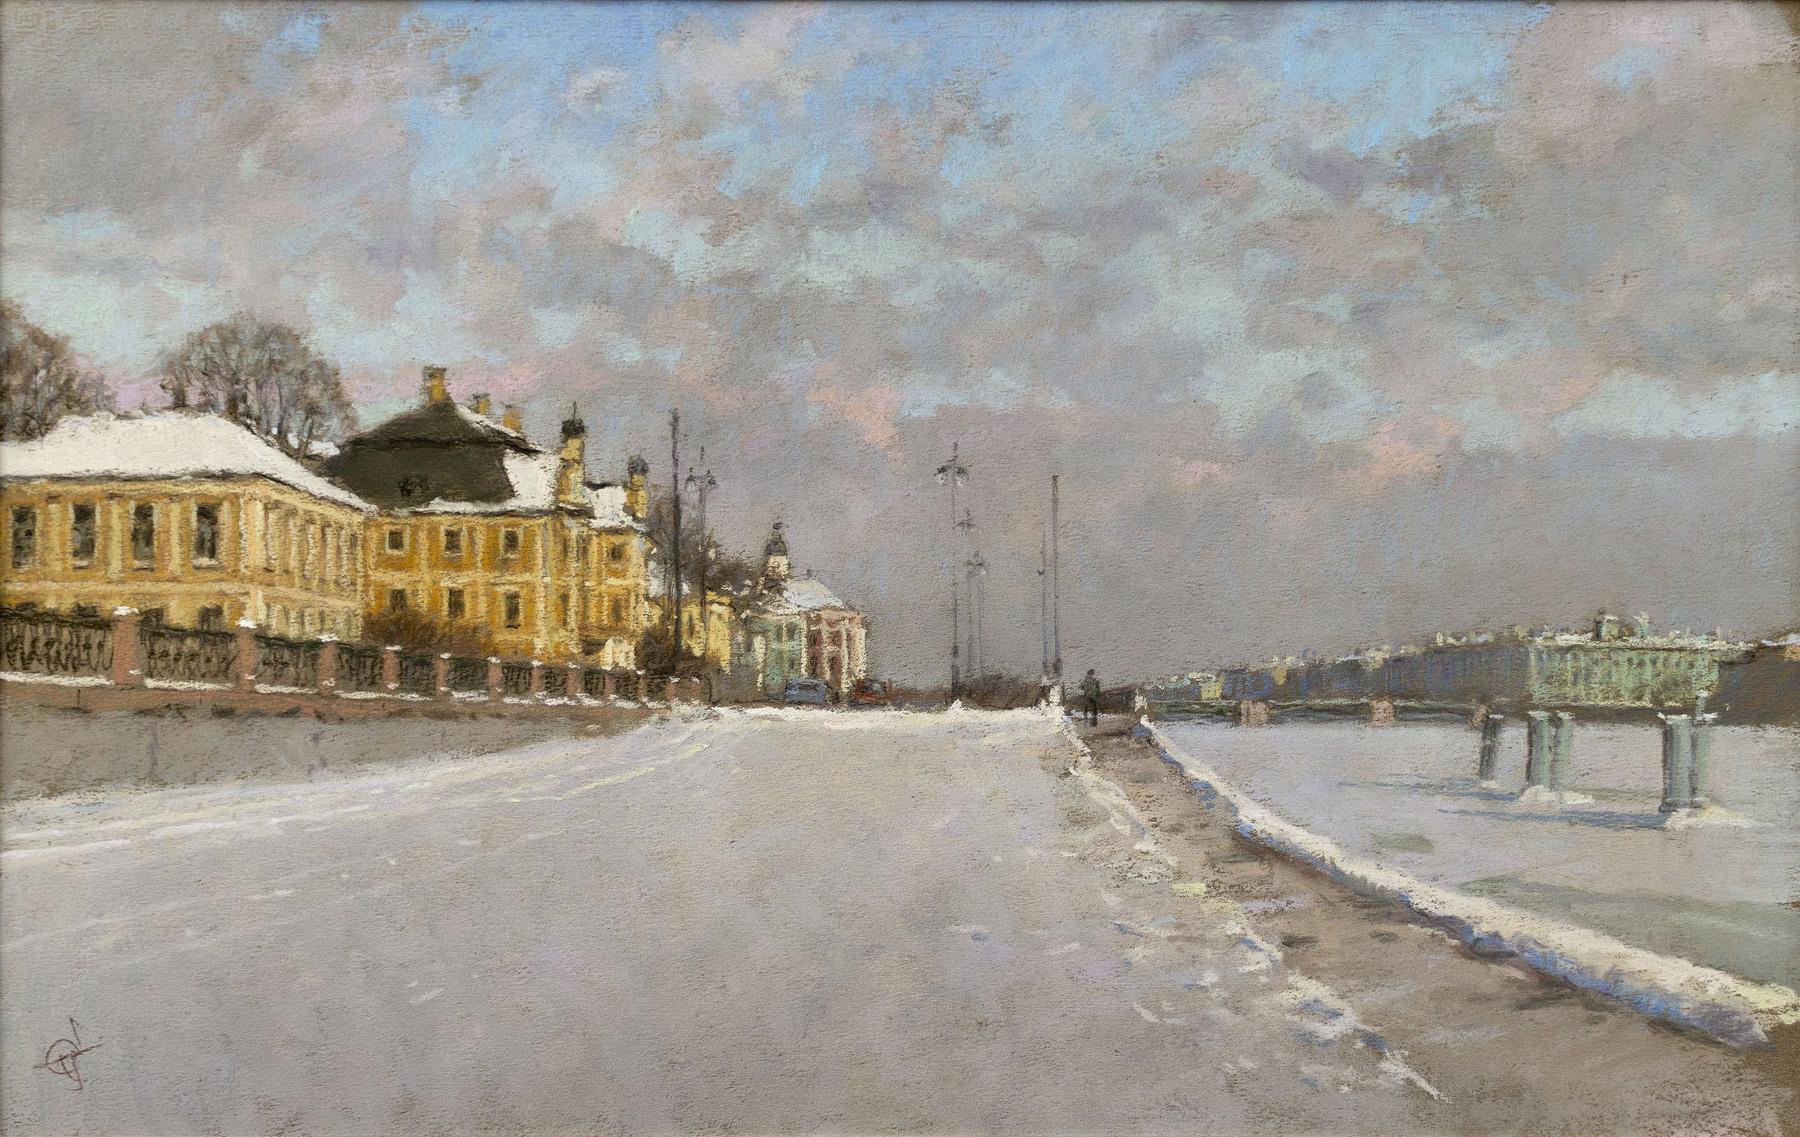  Neva. Menshikov palace